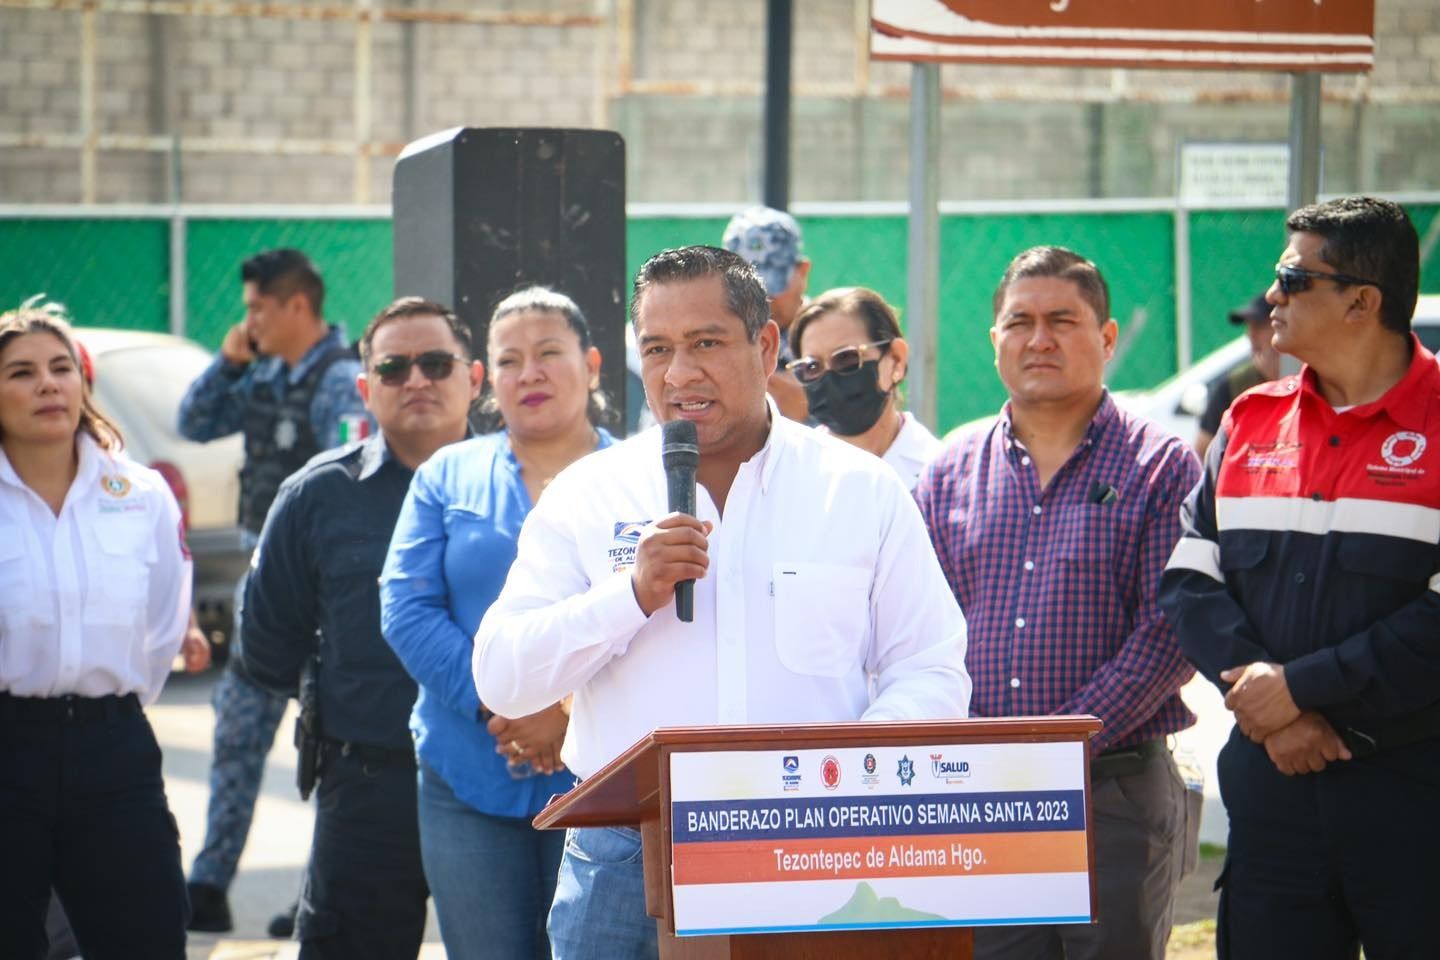 "Fuimos tentados en la Estafa Siniestra, pero sabíamos que era indebido": edil de Tezontepec de Aldama